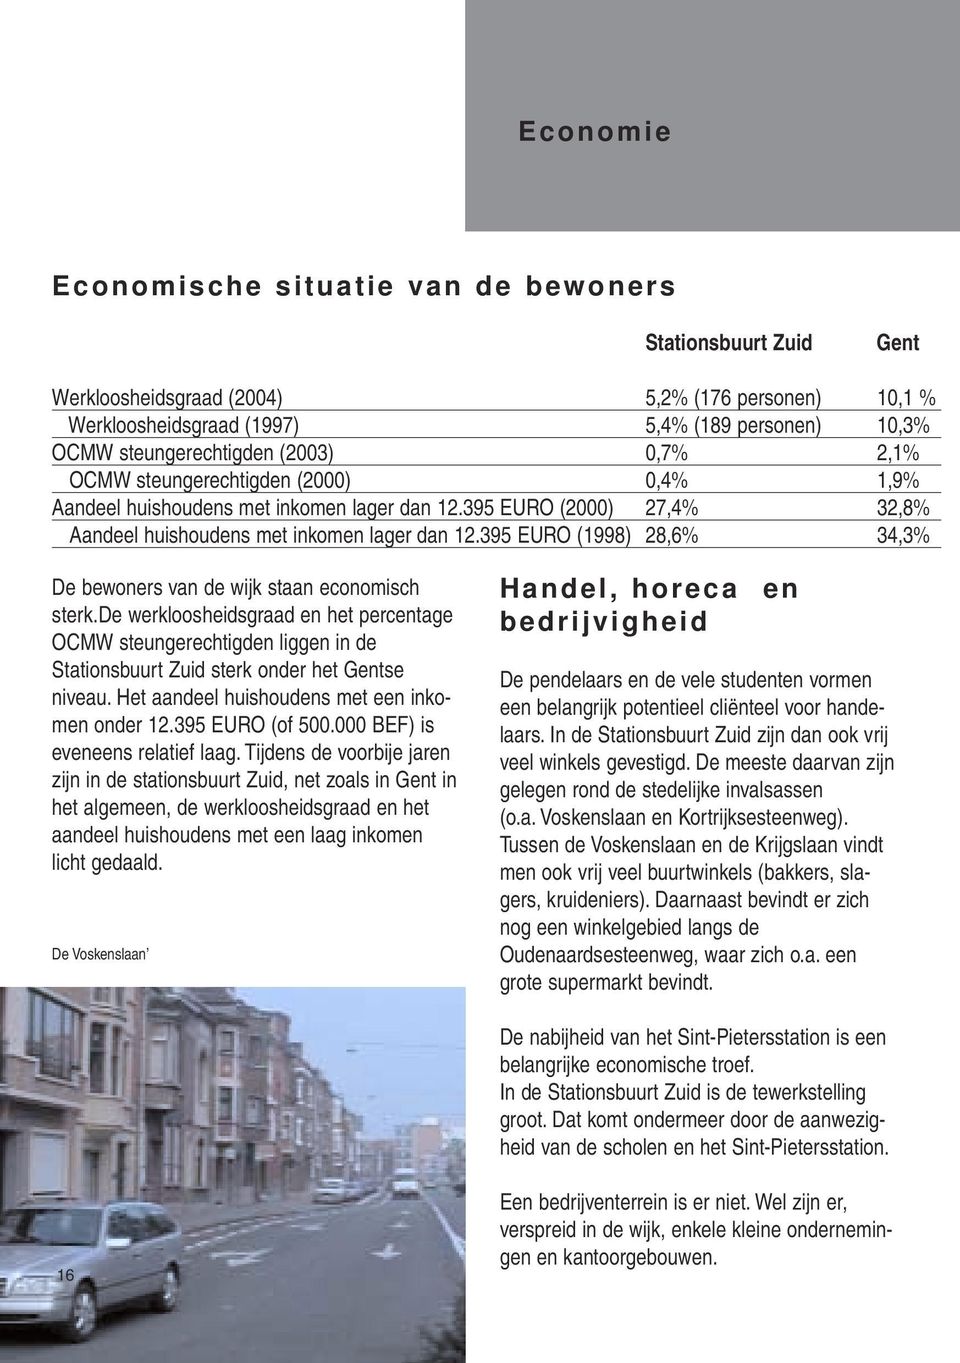 395 EURO (1998) 28,6% 34,3% De bewoners van de wijk staan economisch sterk.de werkloosheidsgraad en het percentage OCMW steungerechtigden liggen in de Stationsbuurt Zuid sterk onder het Gentse niveau.